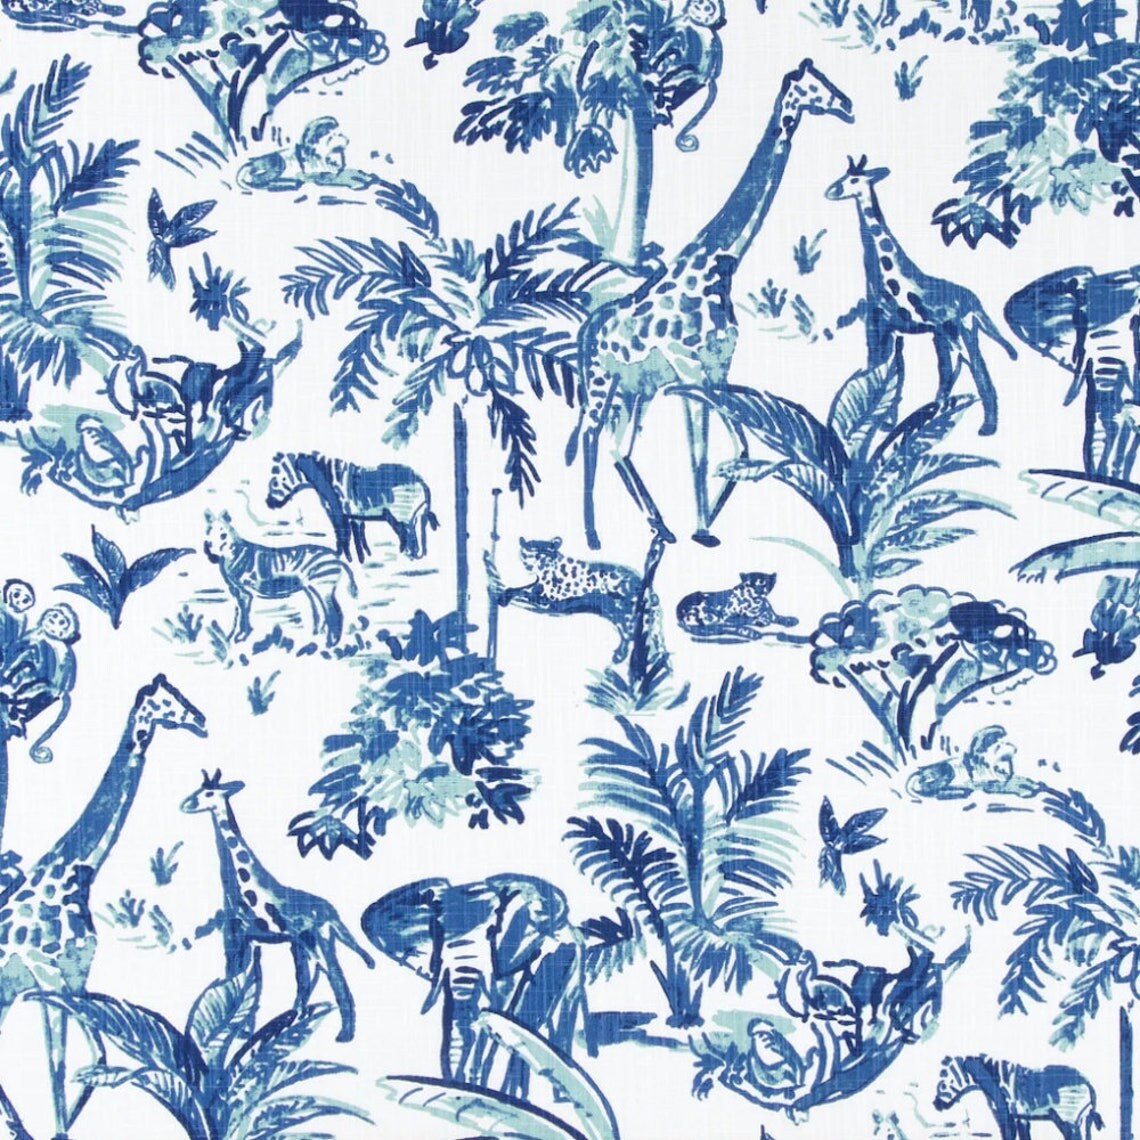 duvet cover in meru commodore blue, cancun blue safari animal toile